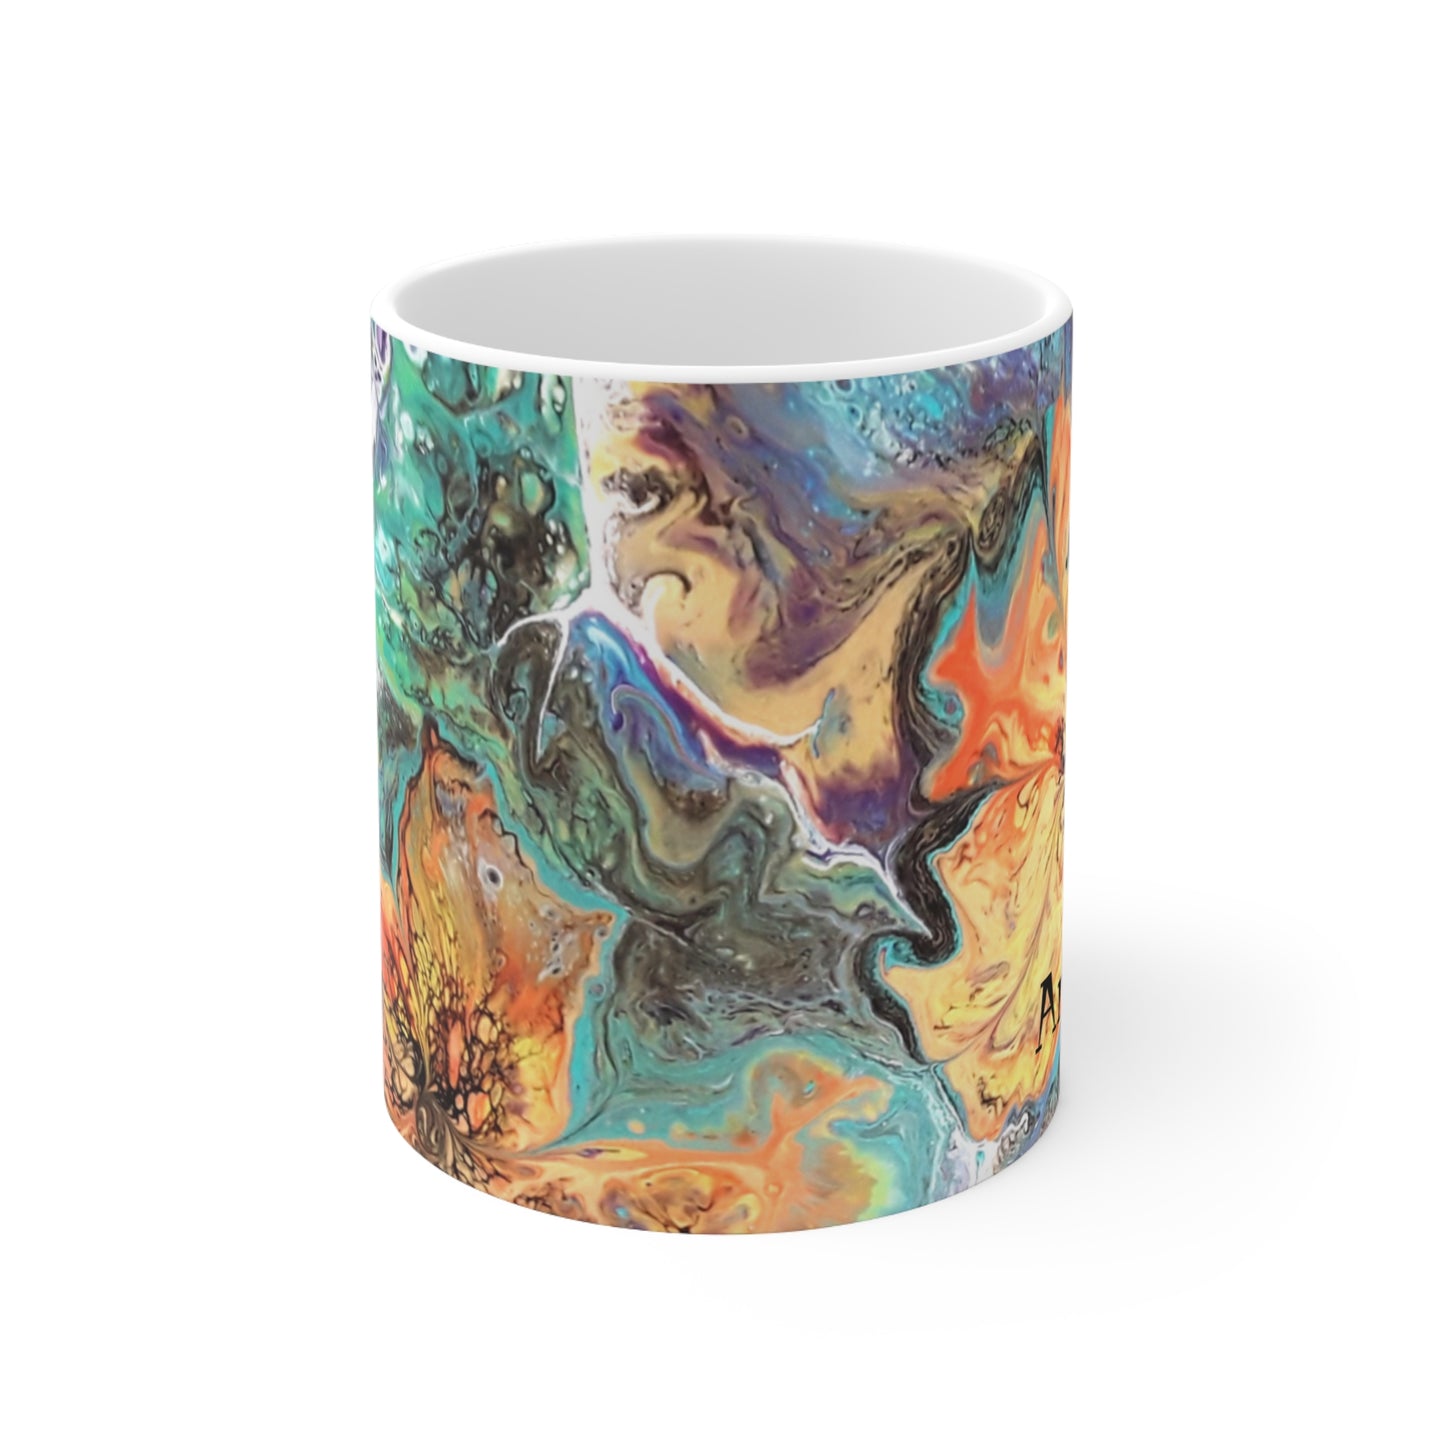 Designer Unique Abstract Artwork Accent Ceramic Mug